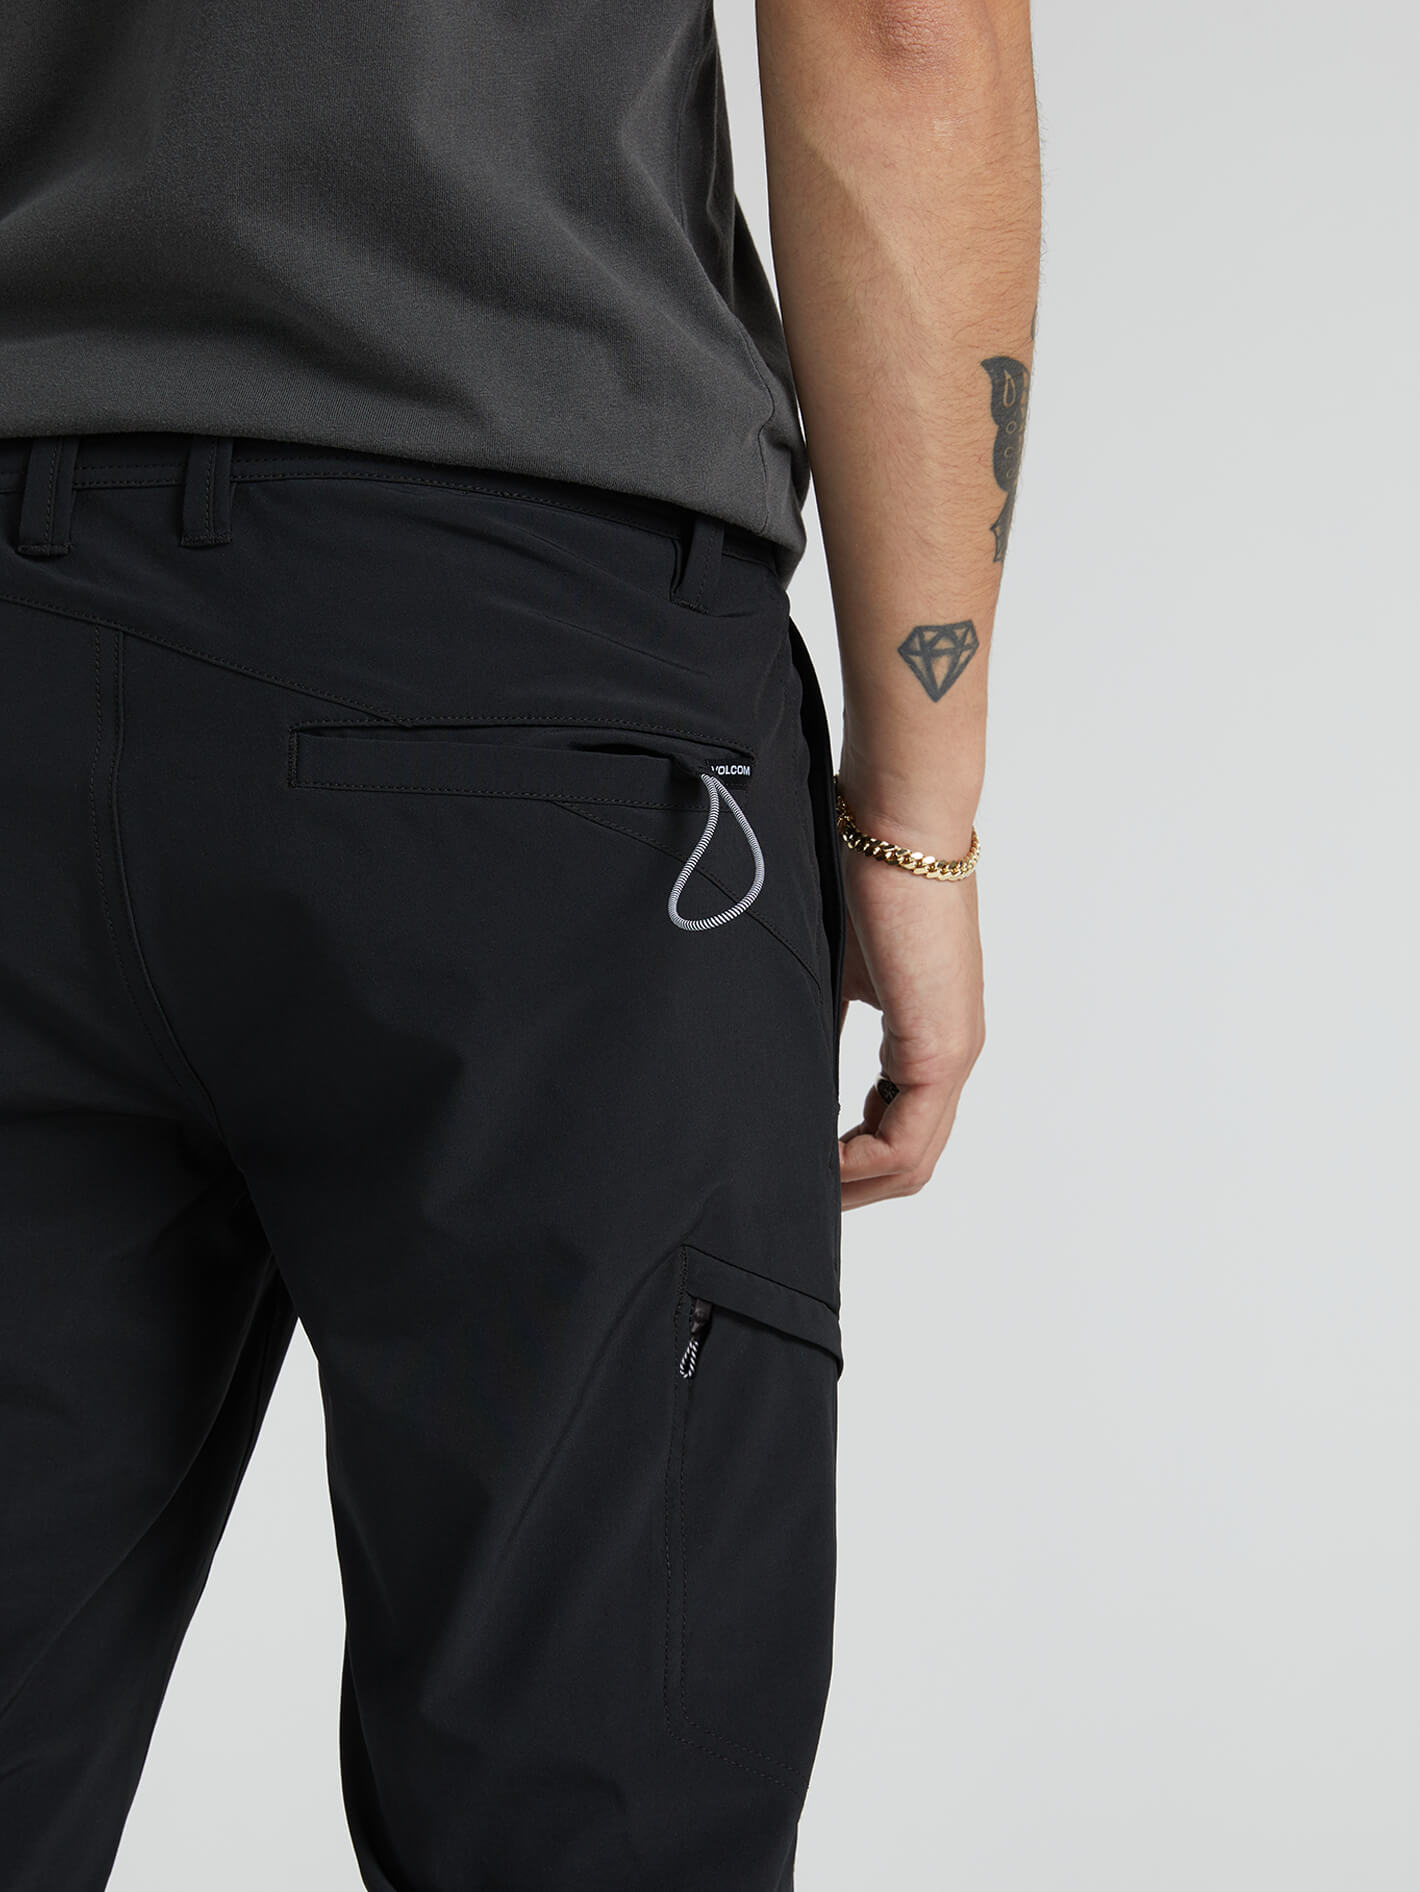 Range Stretch Pants V2 - Black – Volcom US